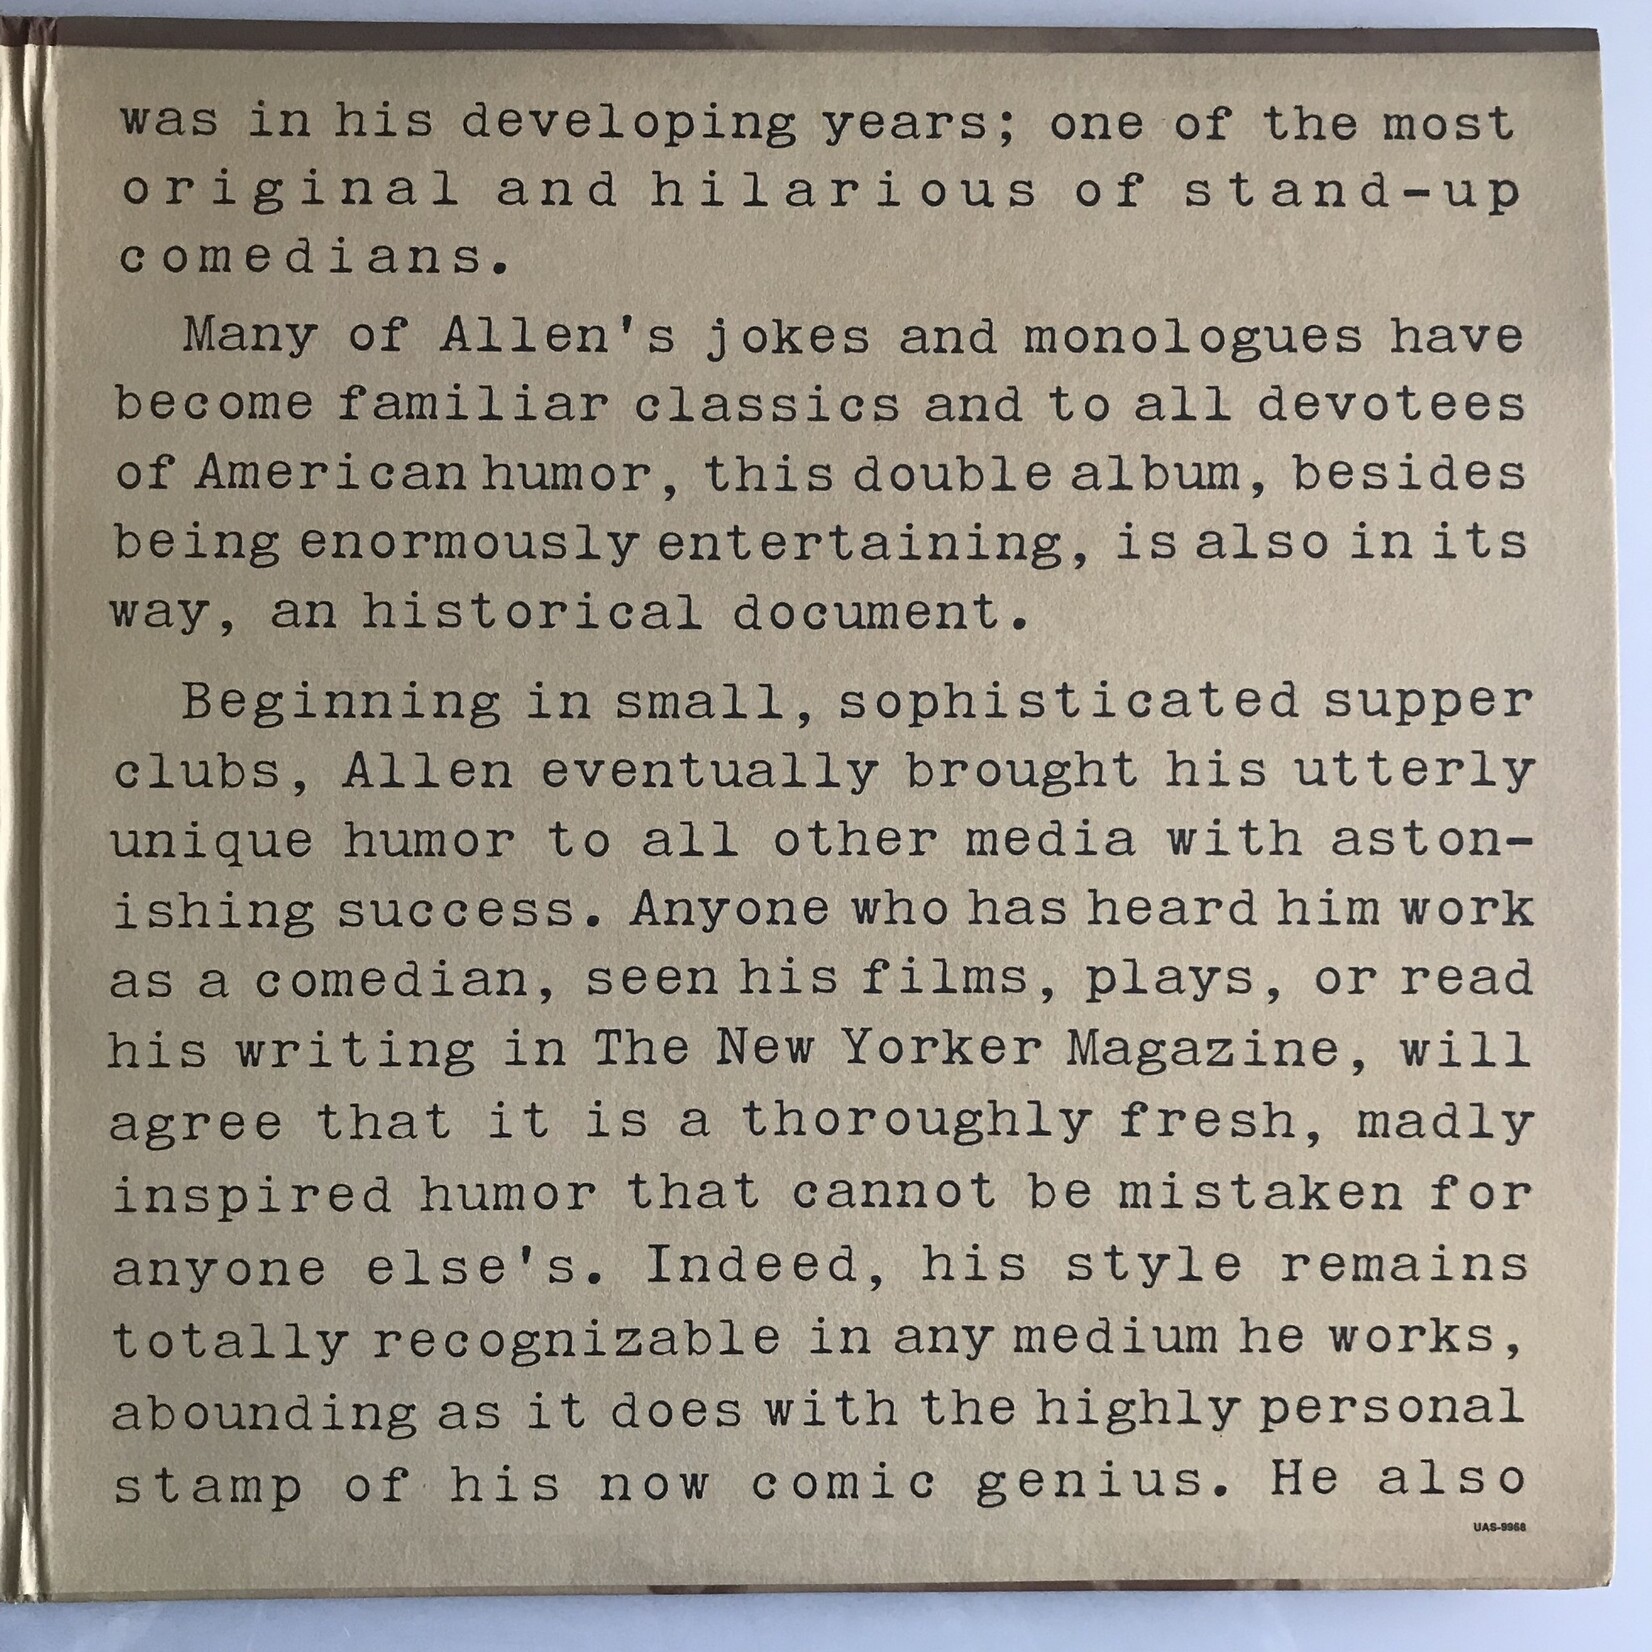 Woody Allen - The Night Club Years 1964-1968 - Vinyl LP (USED)